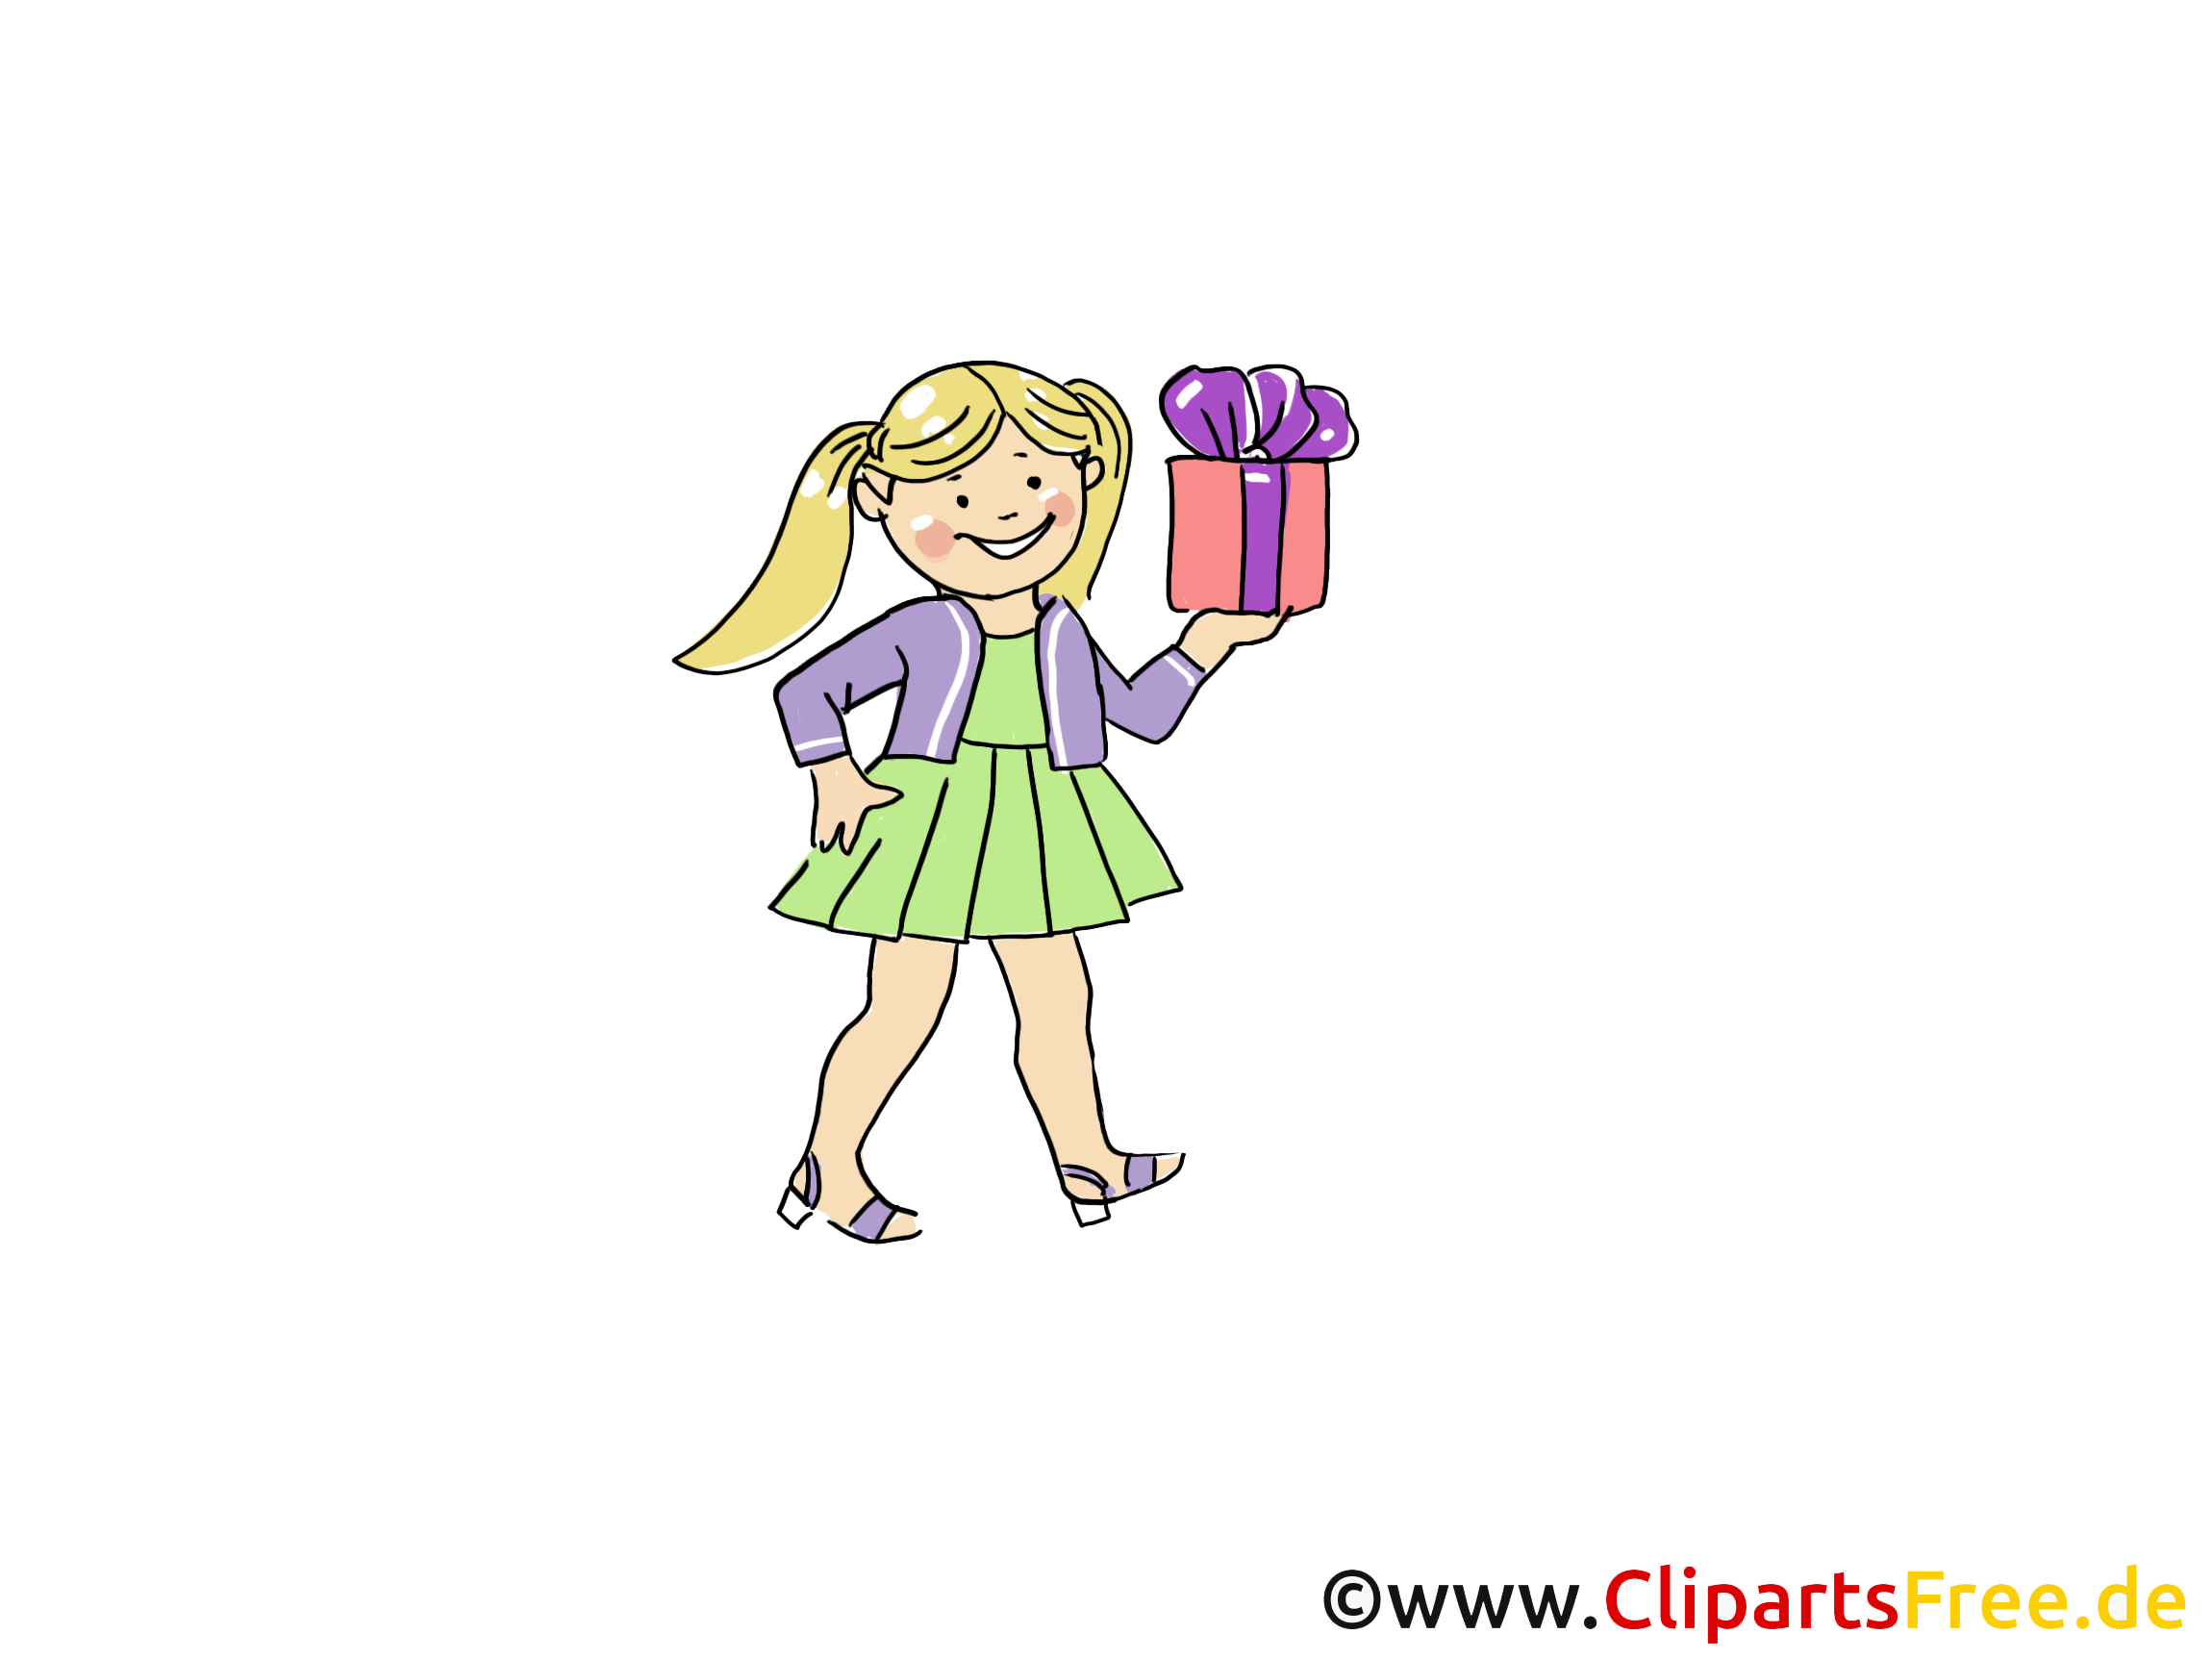 Clip art gratuit anniversaire – Cadeau images gratuites